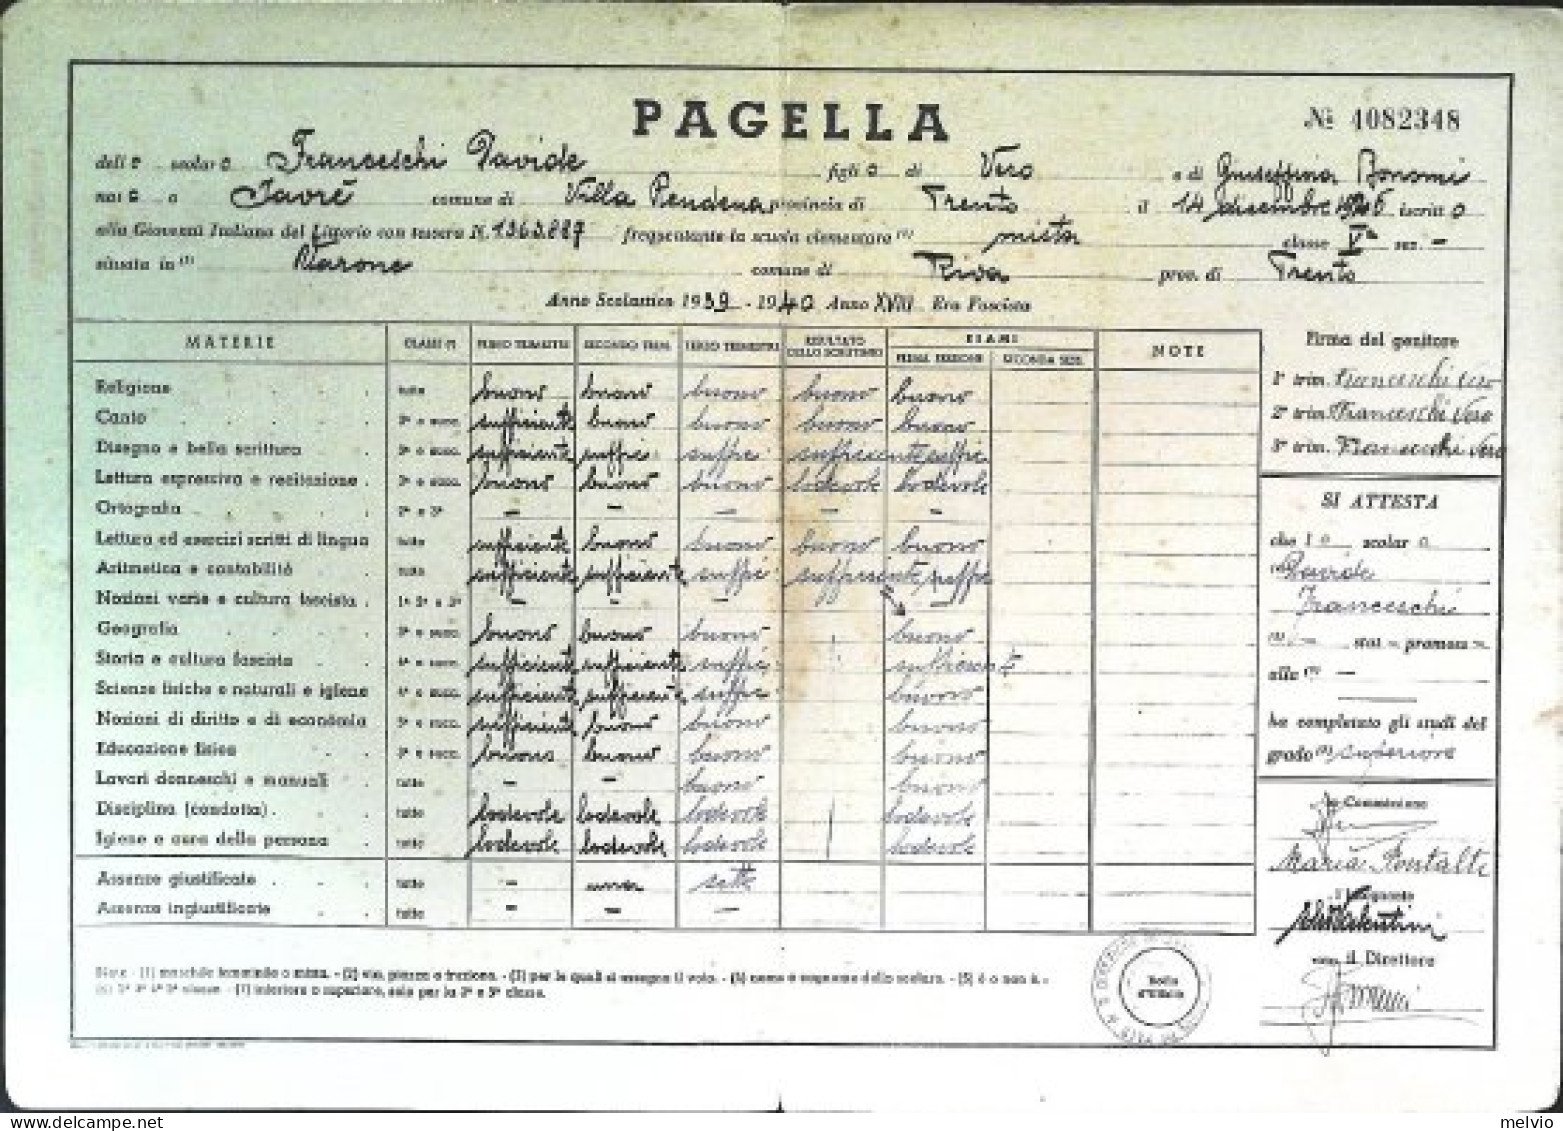 1940-pagella Ministero Educazione Nazionale Vincere P.N.F. Gioventù Italiana Del - Diplomi E Pagelle